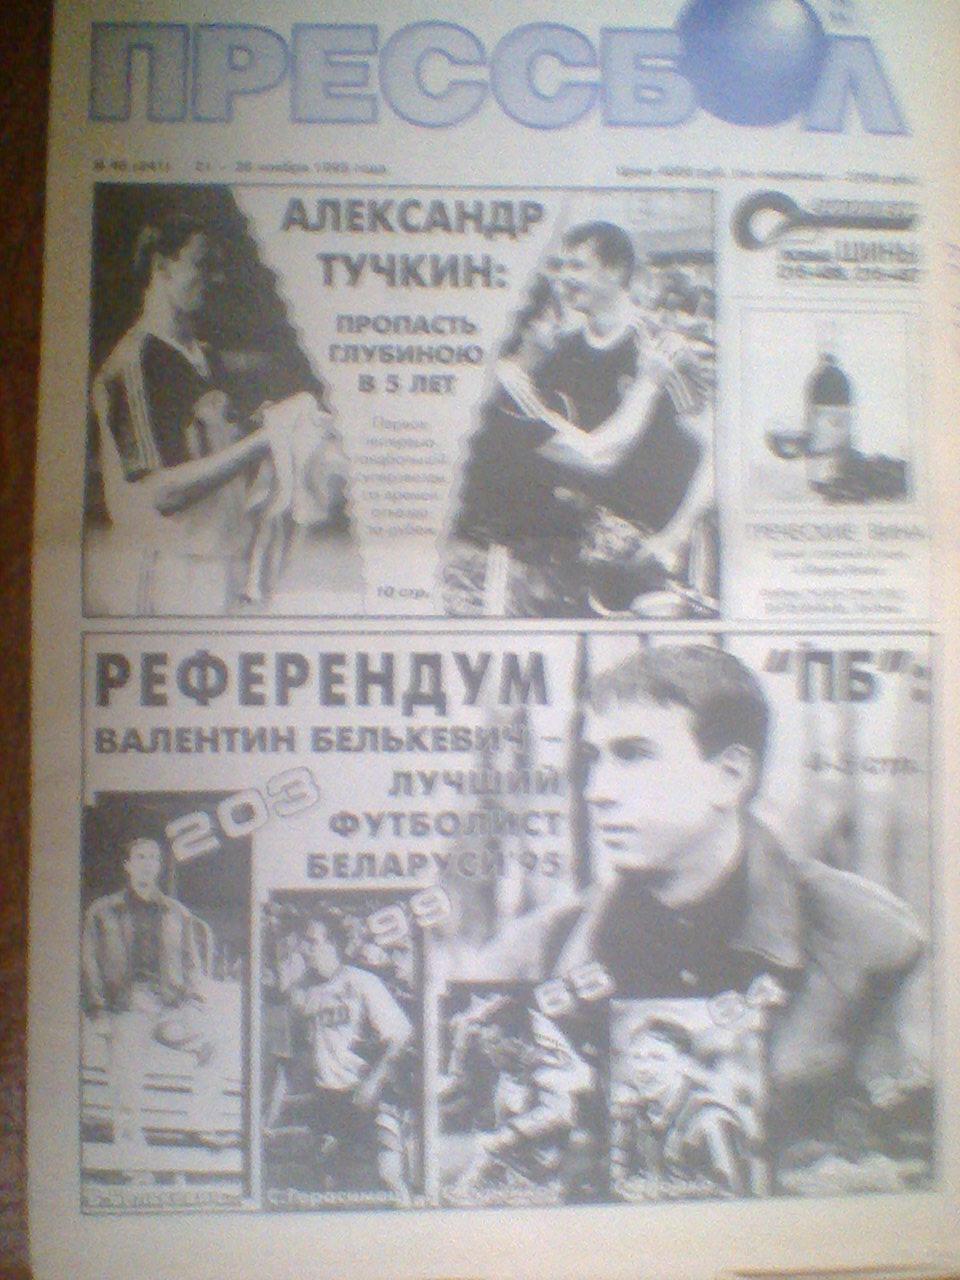 ПРЕССБОЛ--21-28 ноября 1995--интервью с В.Белькевичем--футболист года